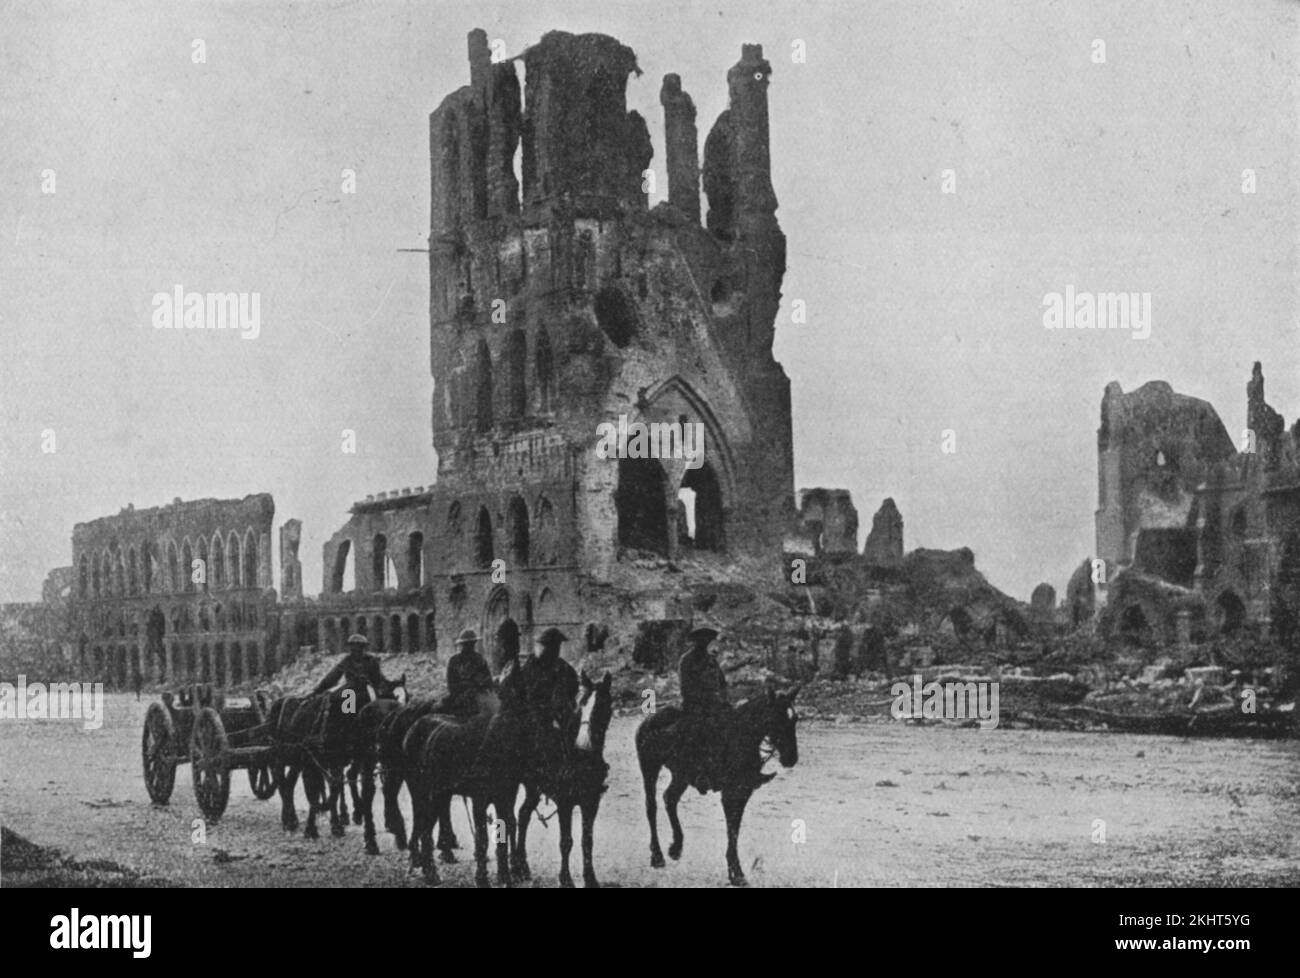 Ruines de la salle de tissus de la ville belge d'Ypres qui a été systématiquement détruite par un tir d'artillerie pendant cinq batailles entre 1914 et 1918 pendant la première Guerre mondiale Banque D'Images